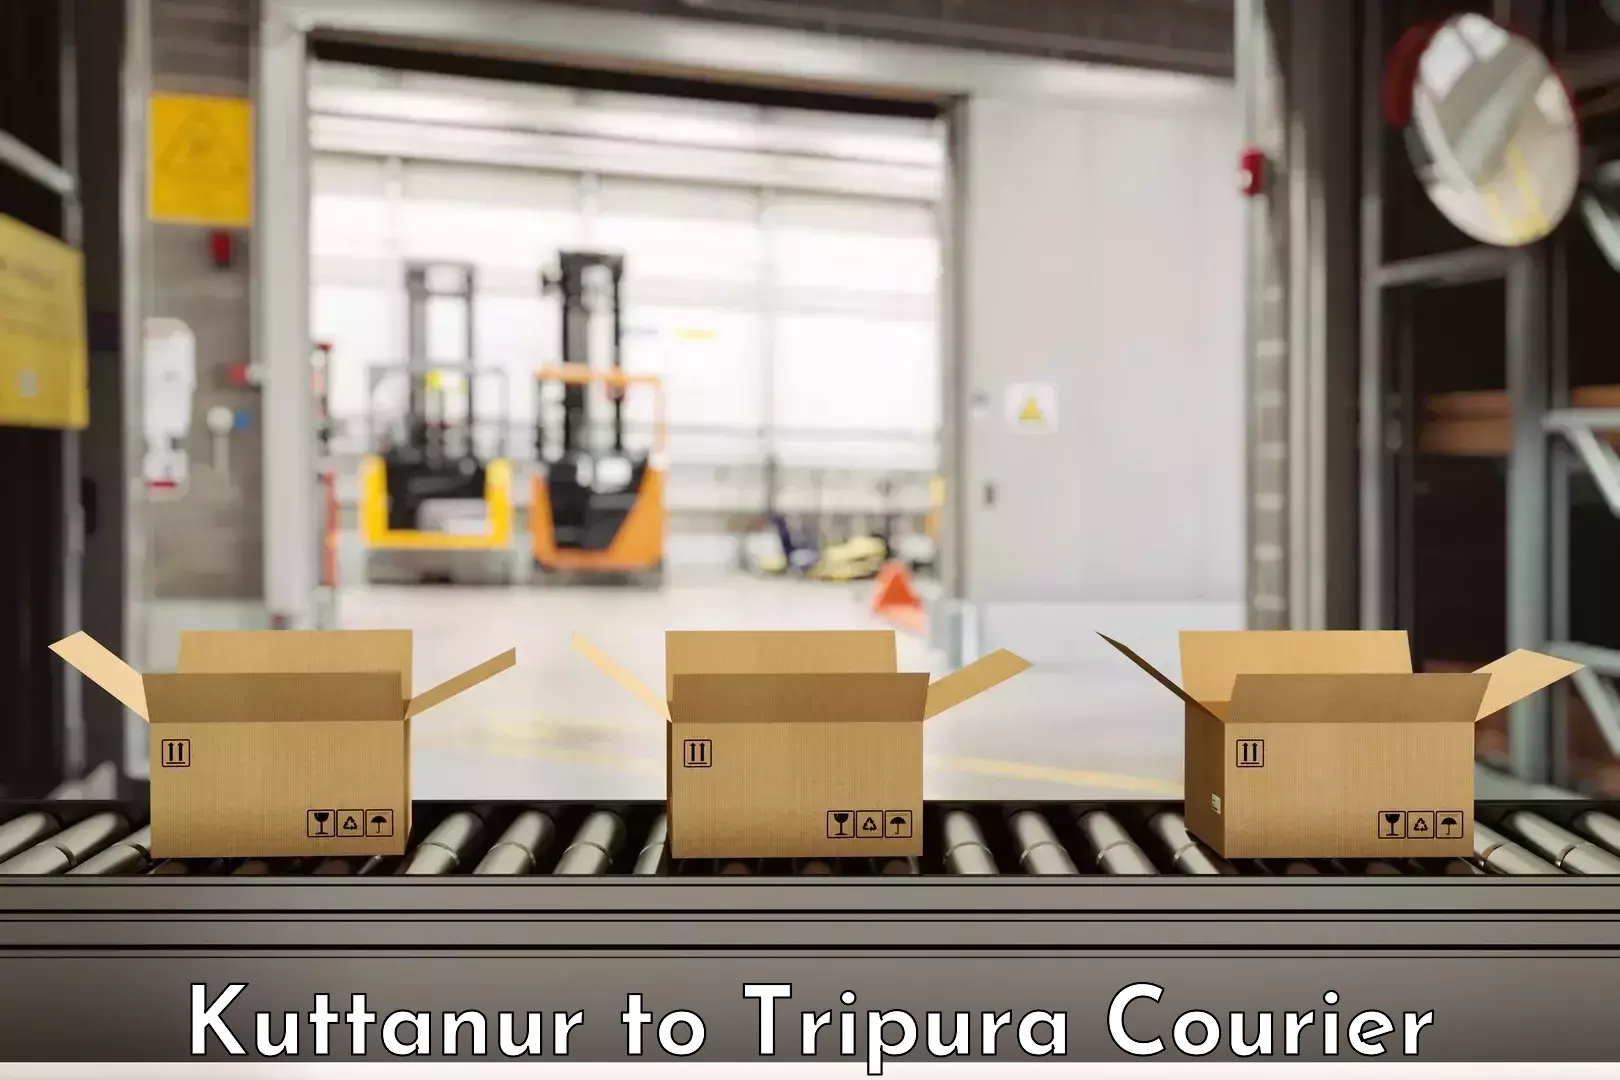 Skilled furniture transporters Kuttanur to Udaipur Tripura